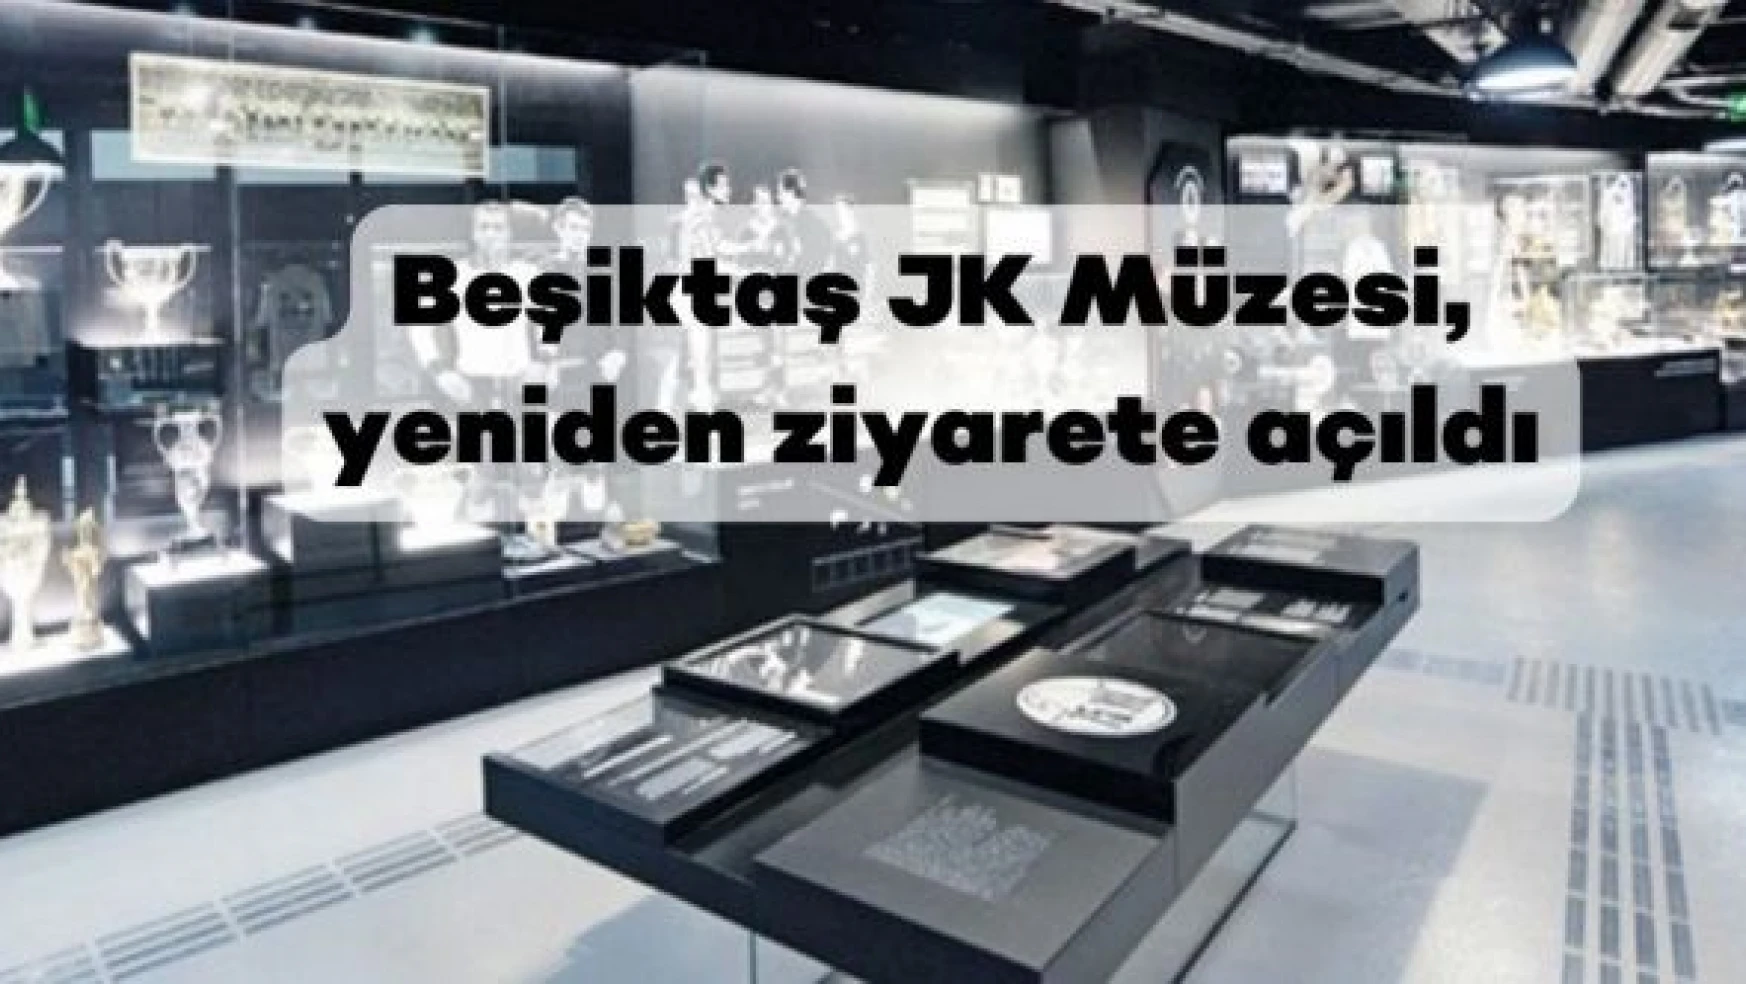 Beşiktaş JK Müzesi, yeniden ziyarete açıldı